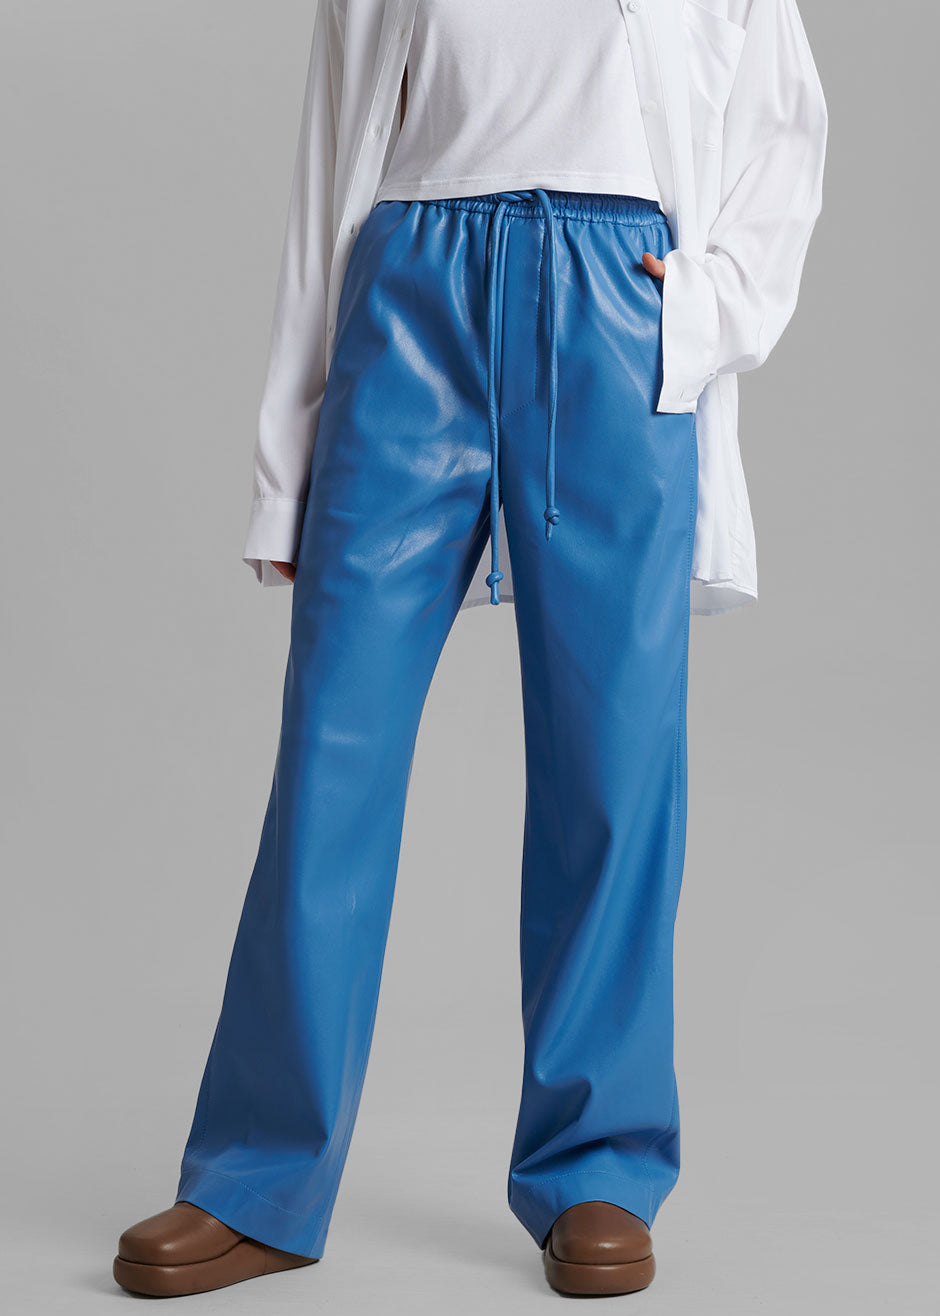 Nanushka Calie Vegan Leather Pants - Blue - 2